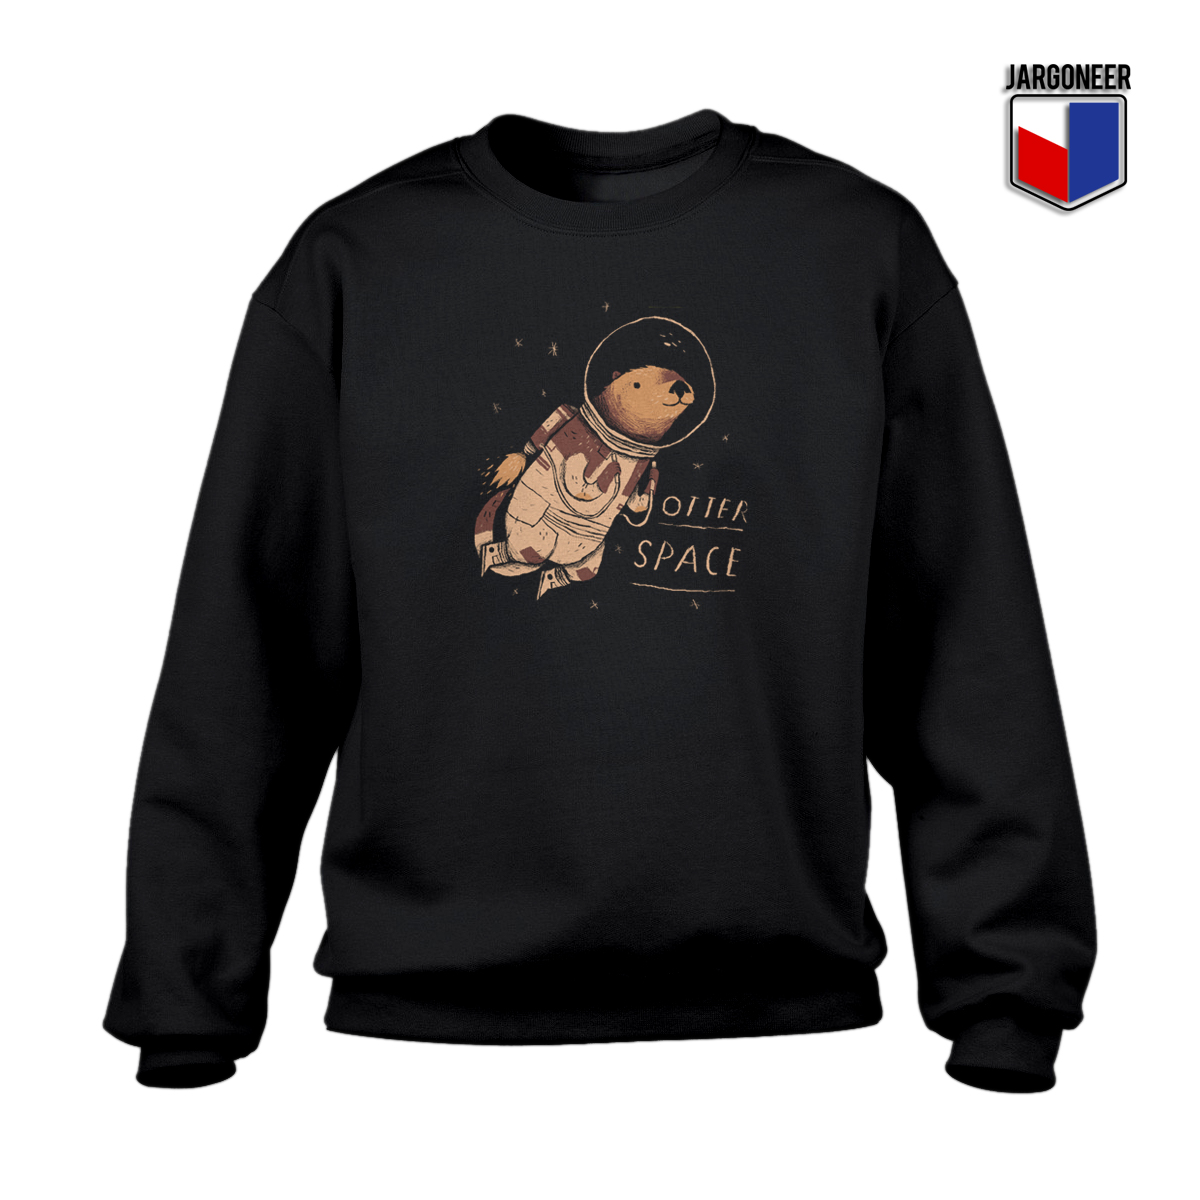 Otter Space Crewneck Sweatshirt - Shop Unique Graphic Cool Shirt Designs